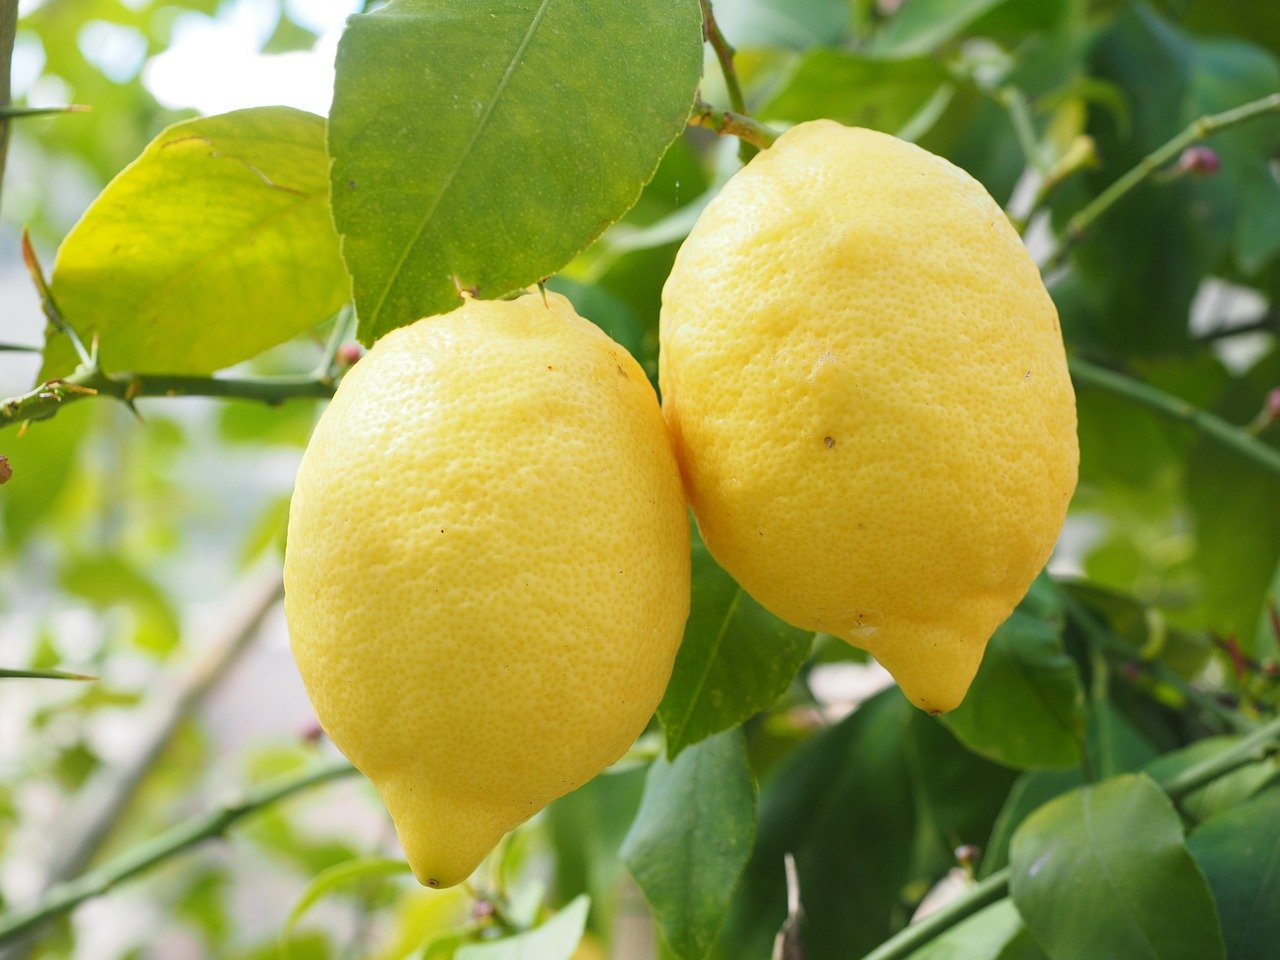 The Lemon Groves of Gargnano